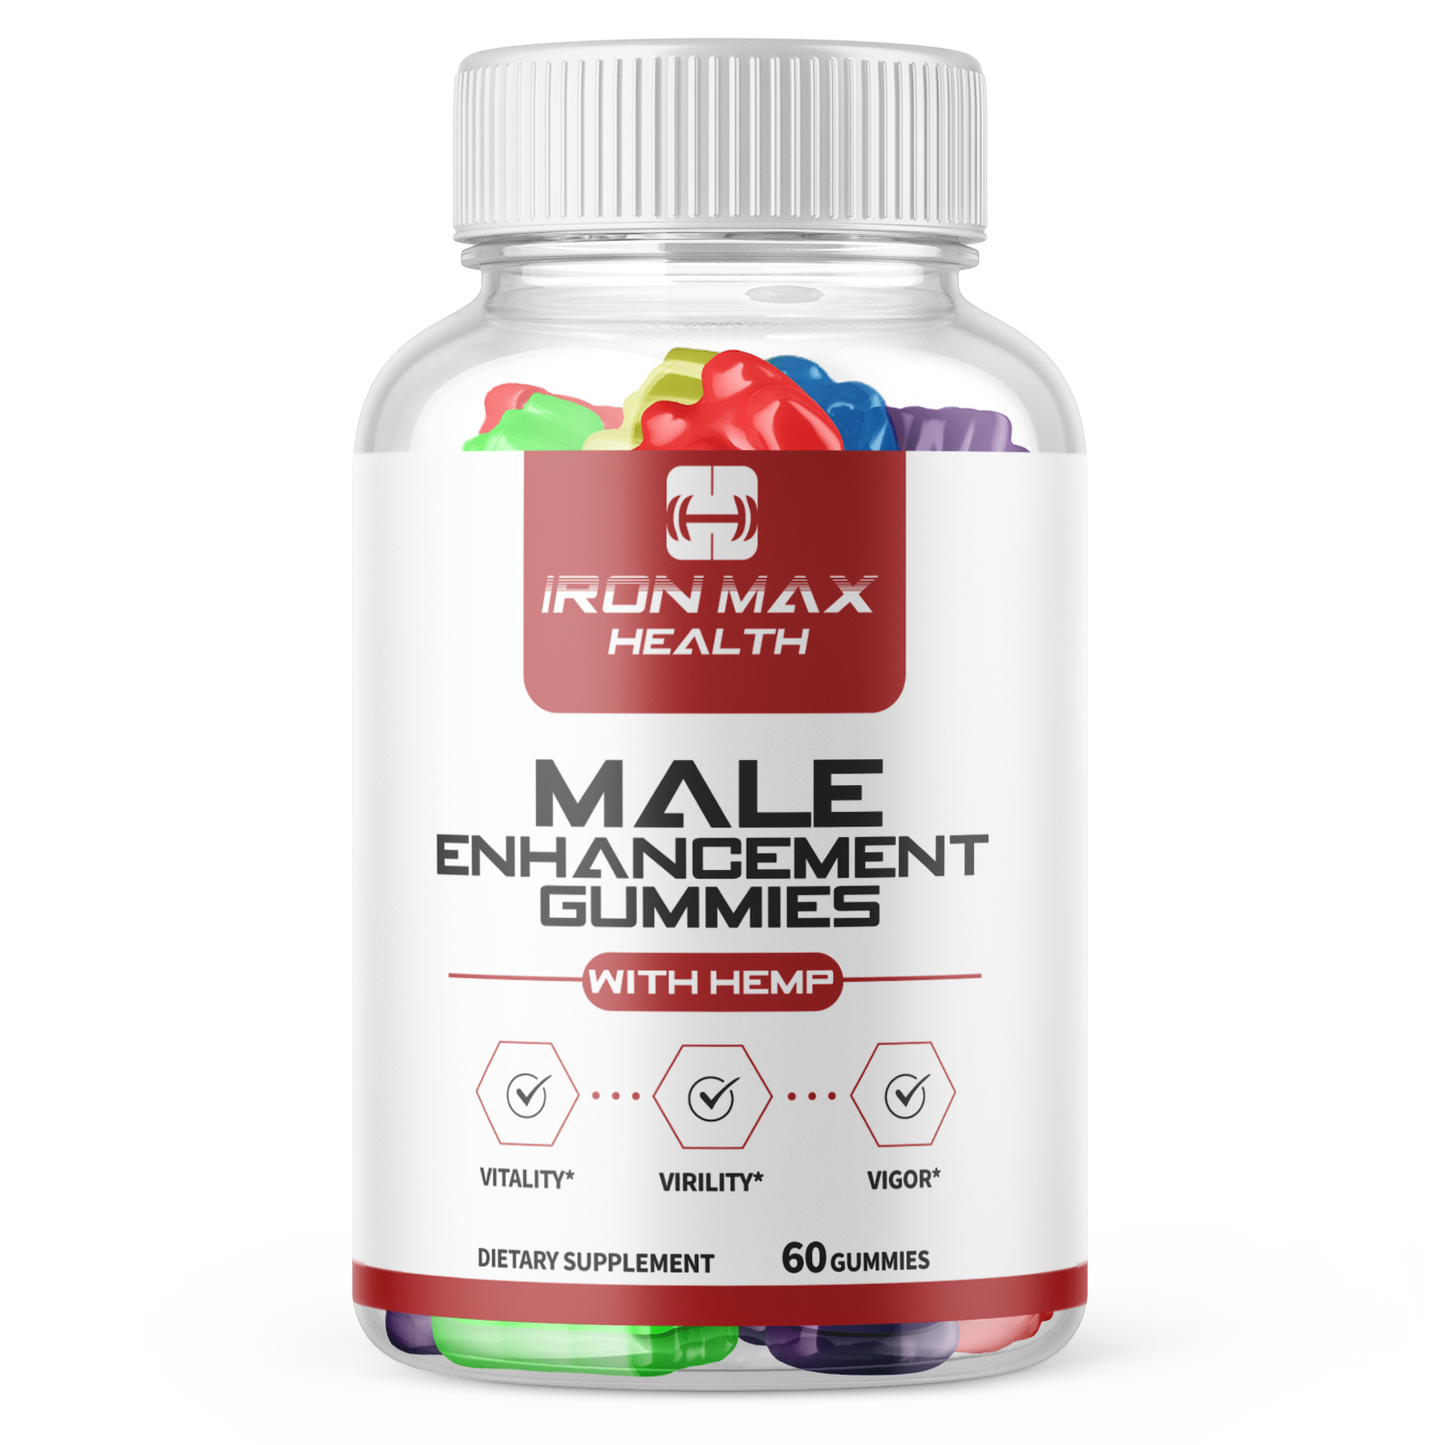 Iron Max Health Male Enhancement Gummies